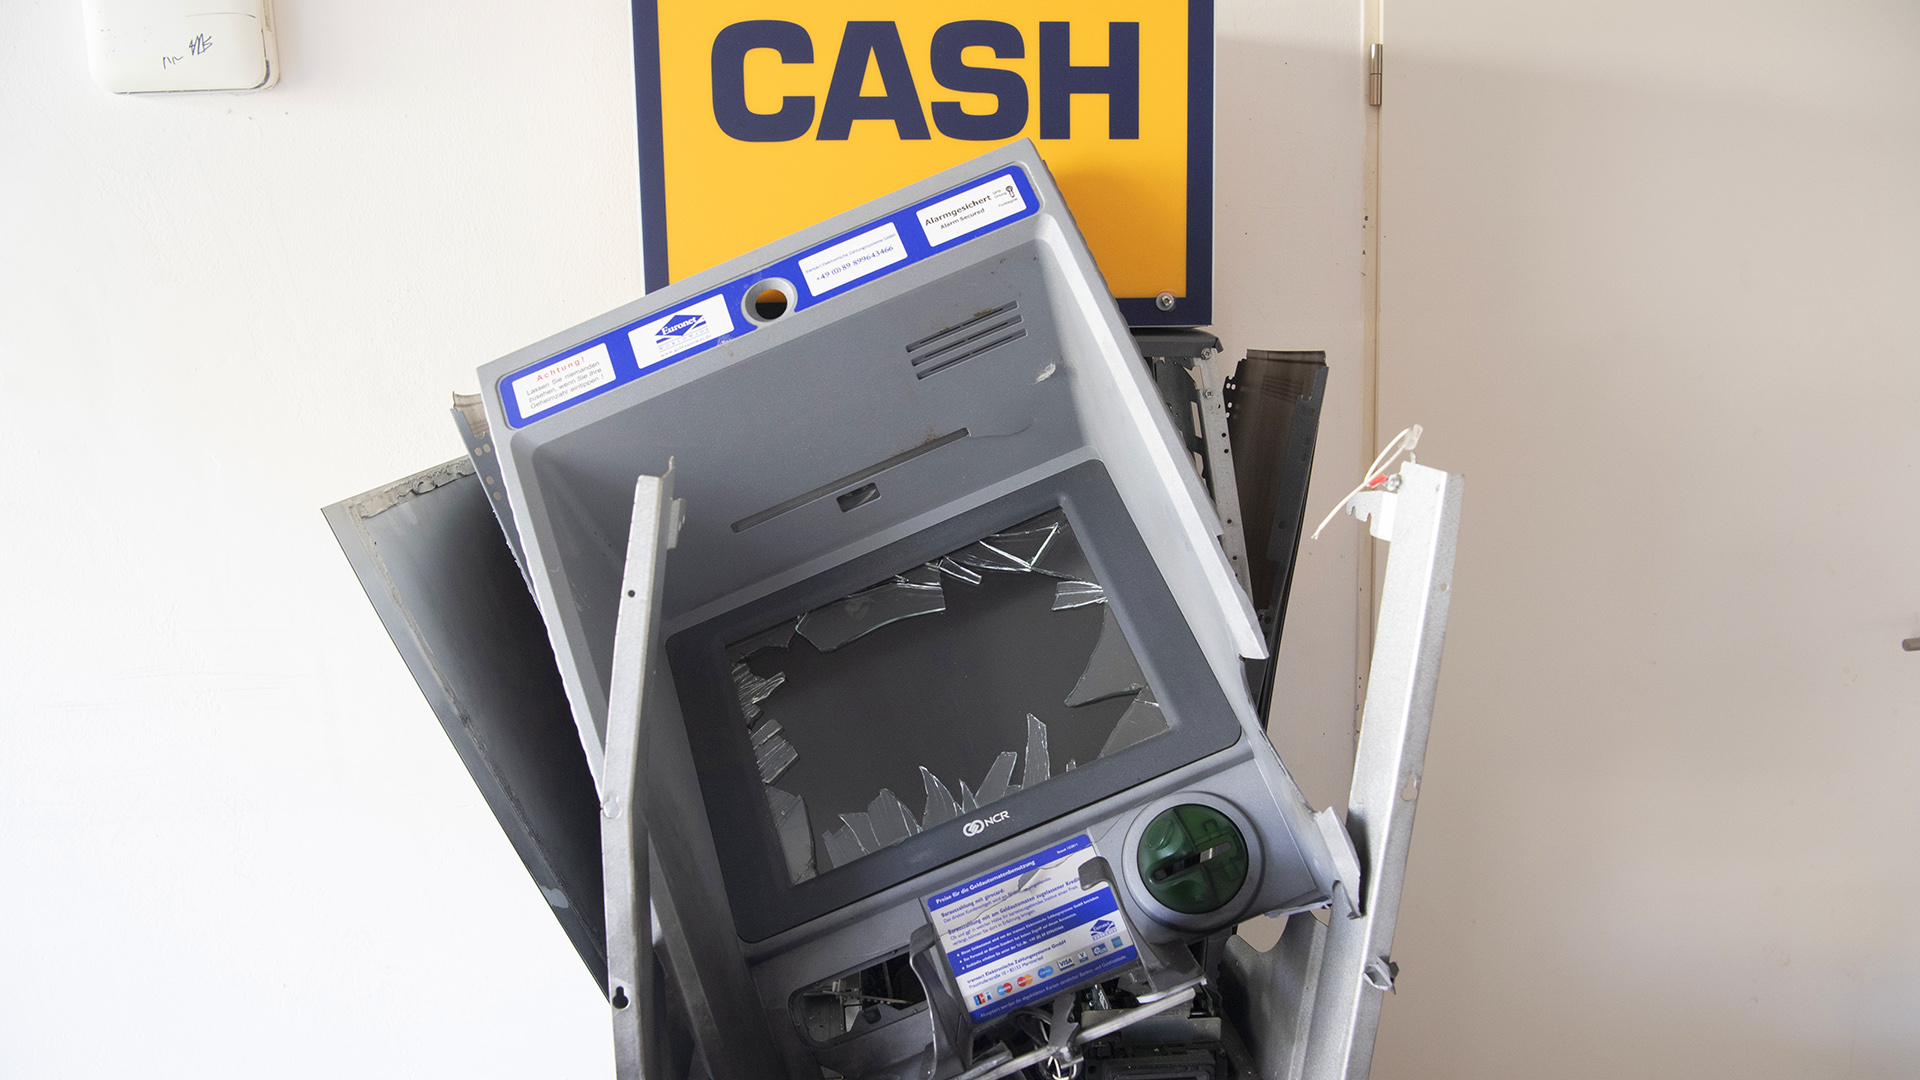 Symbolbild: Ein zerstörter Geldautomat. (Quelle: dpa/Paul Zinken)